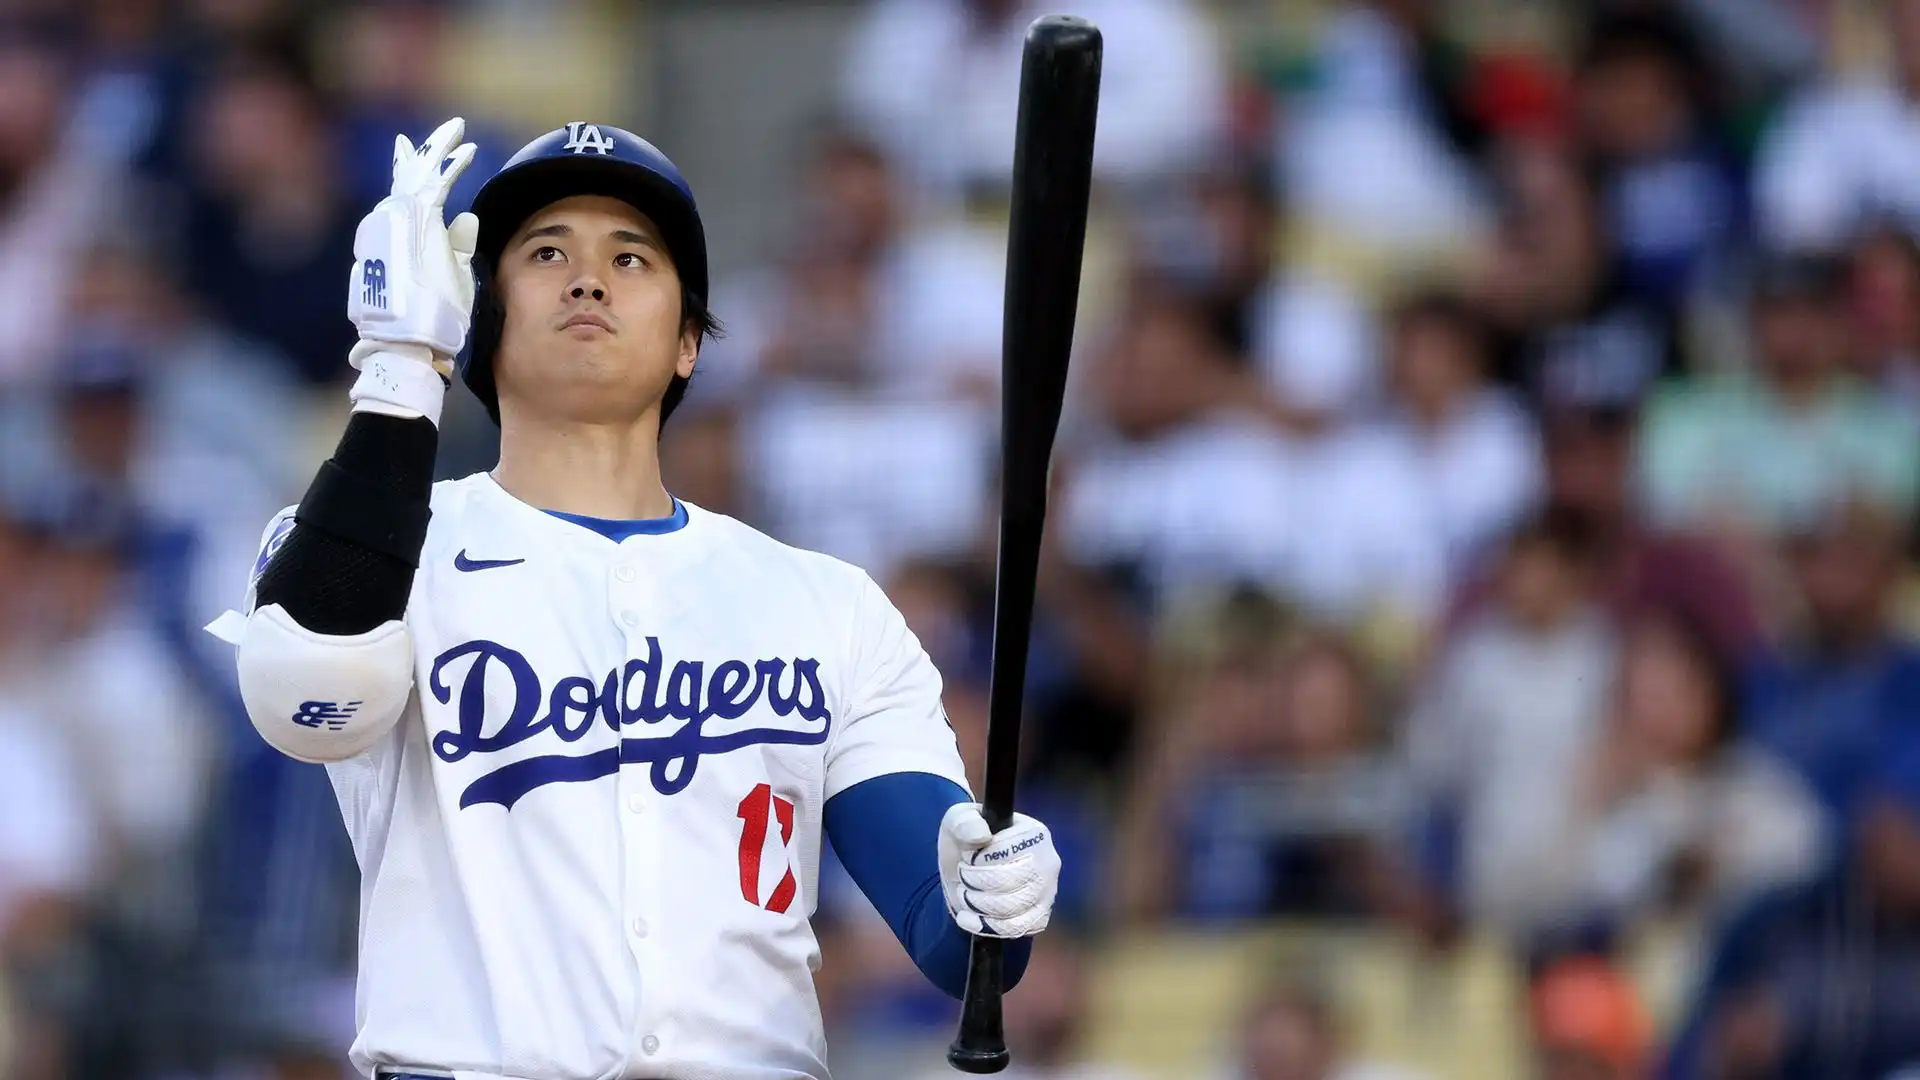 La stella dei Los Angeles Dodgers detiene il record per il maggior numero di home run per un giocatore giapponese, ed è destinato ad aumentarlo ulteriormente nei prossimi mesi